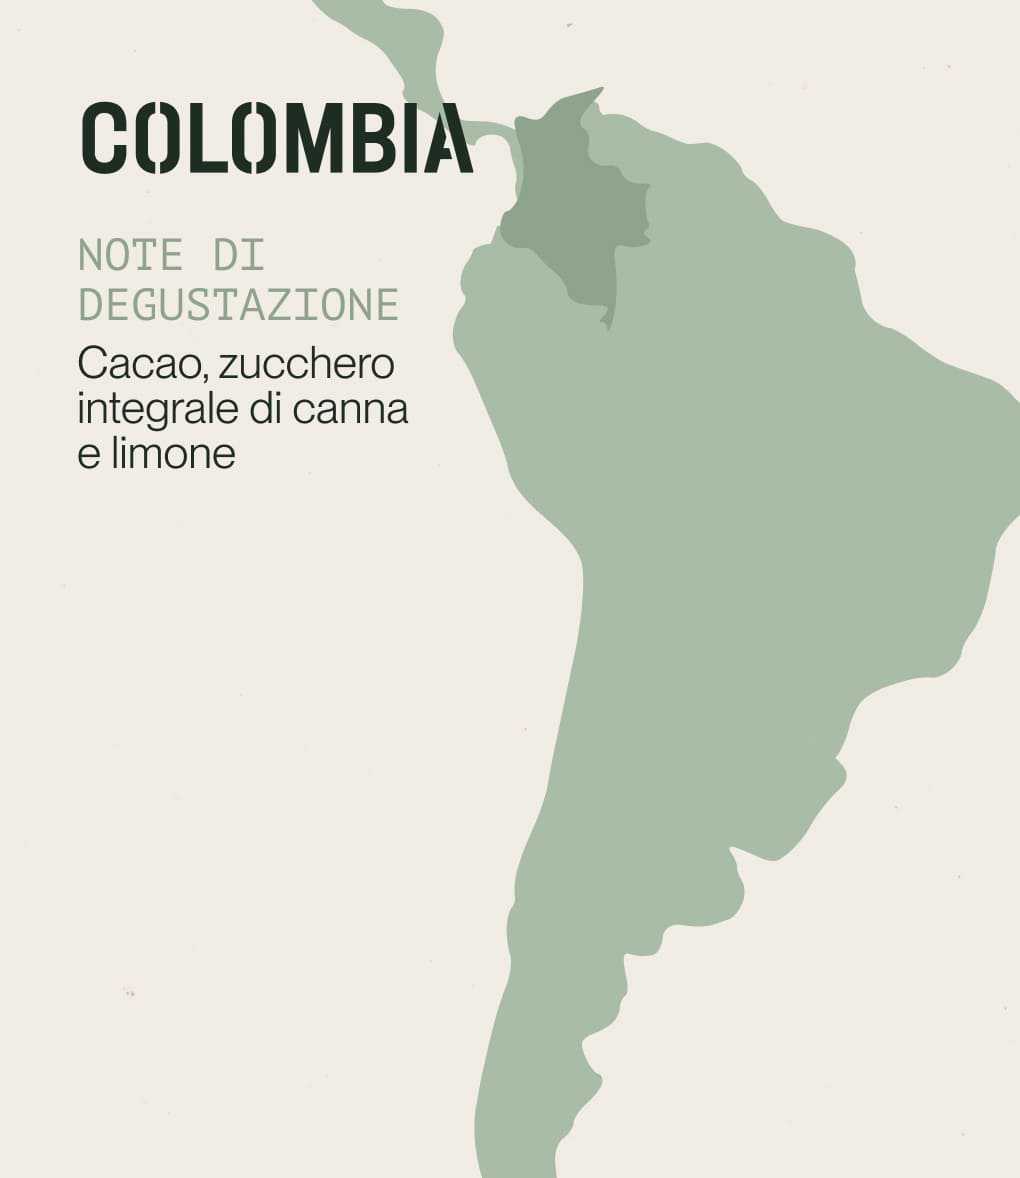 Note di degustazione di caffè di specialità proveniente dalla Colombia